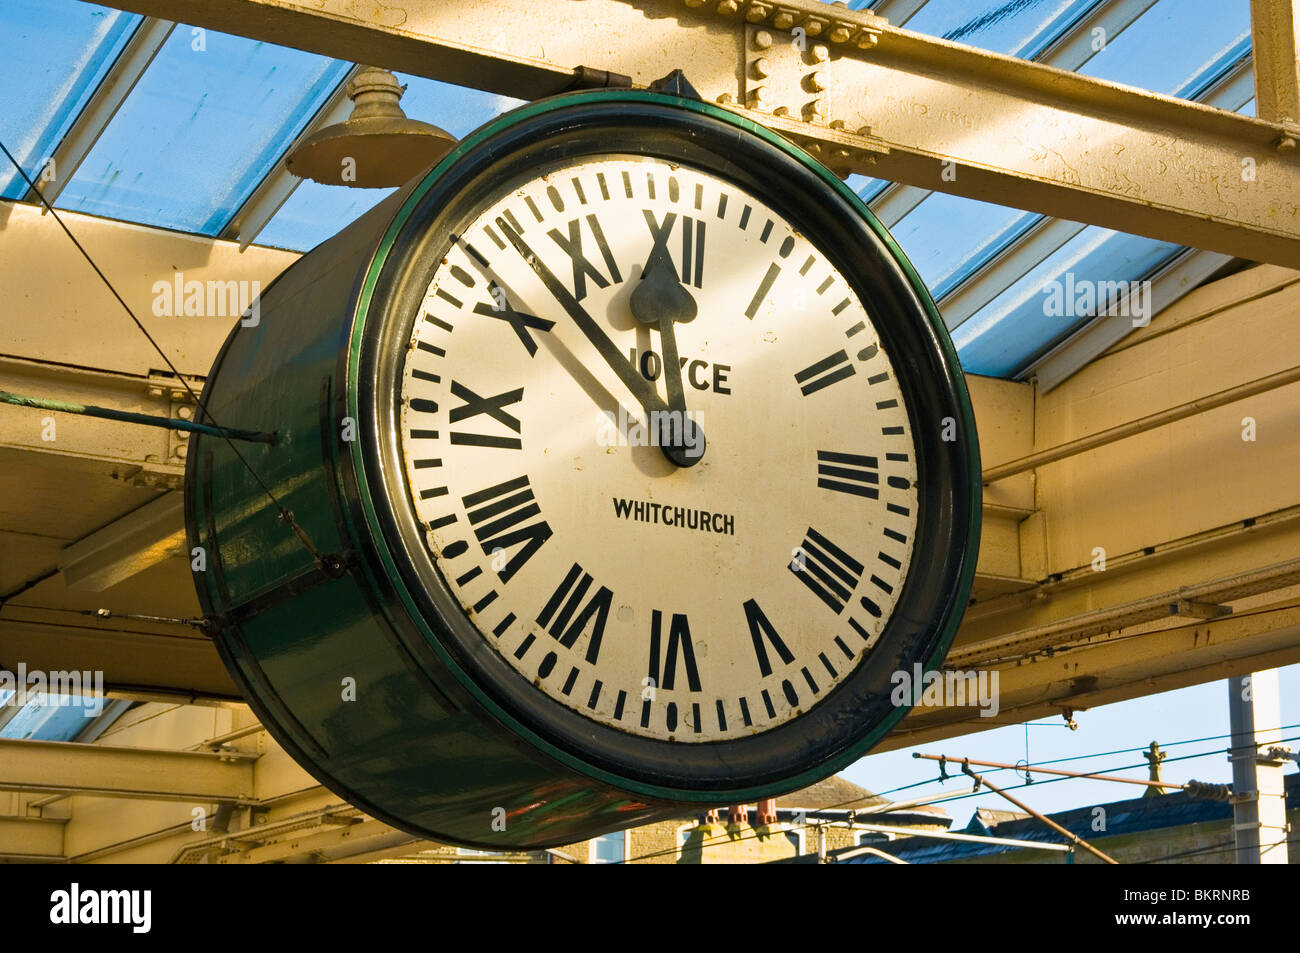 Clock in corrispondenza della stazione ferroviaria a Carnforth, Lancashire, Inghilterra. Le piattaforme e orologio featureed nel film "Il breve incontro' Foto Stock